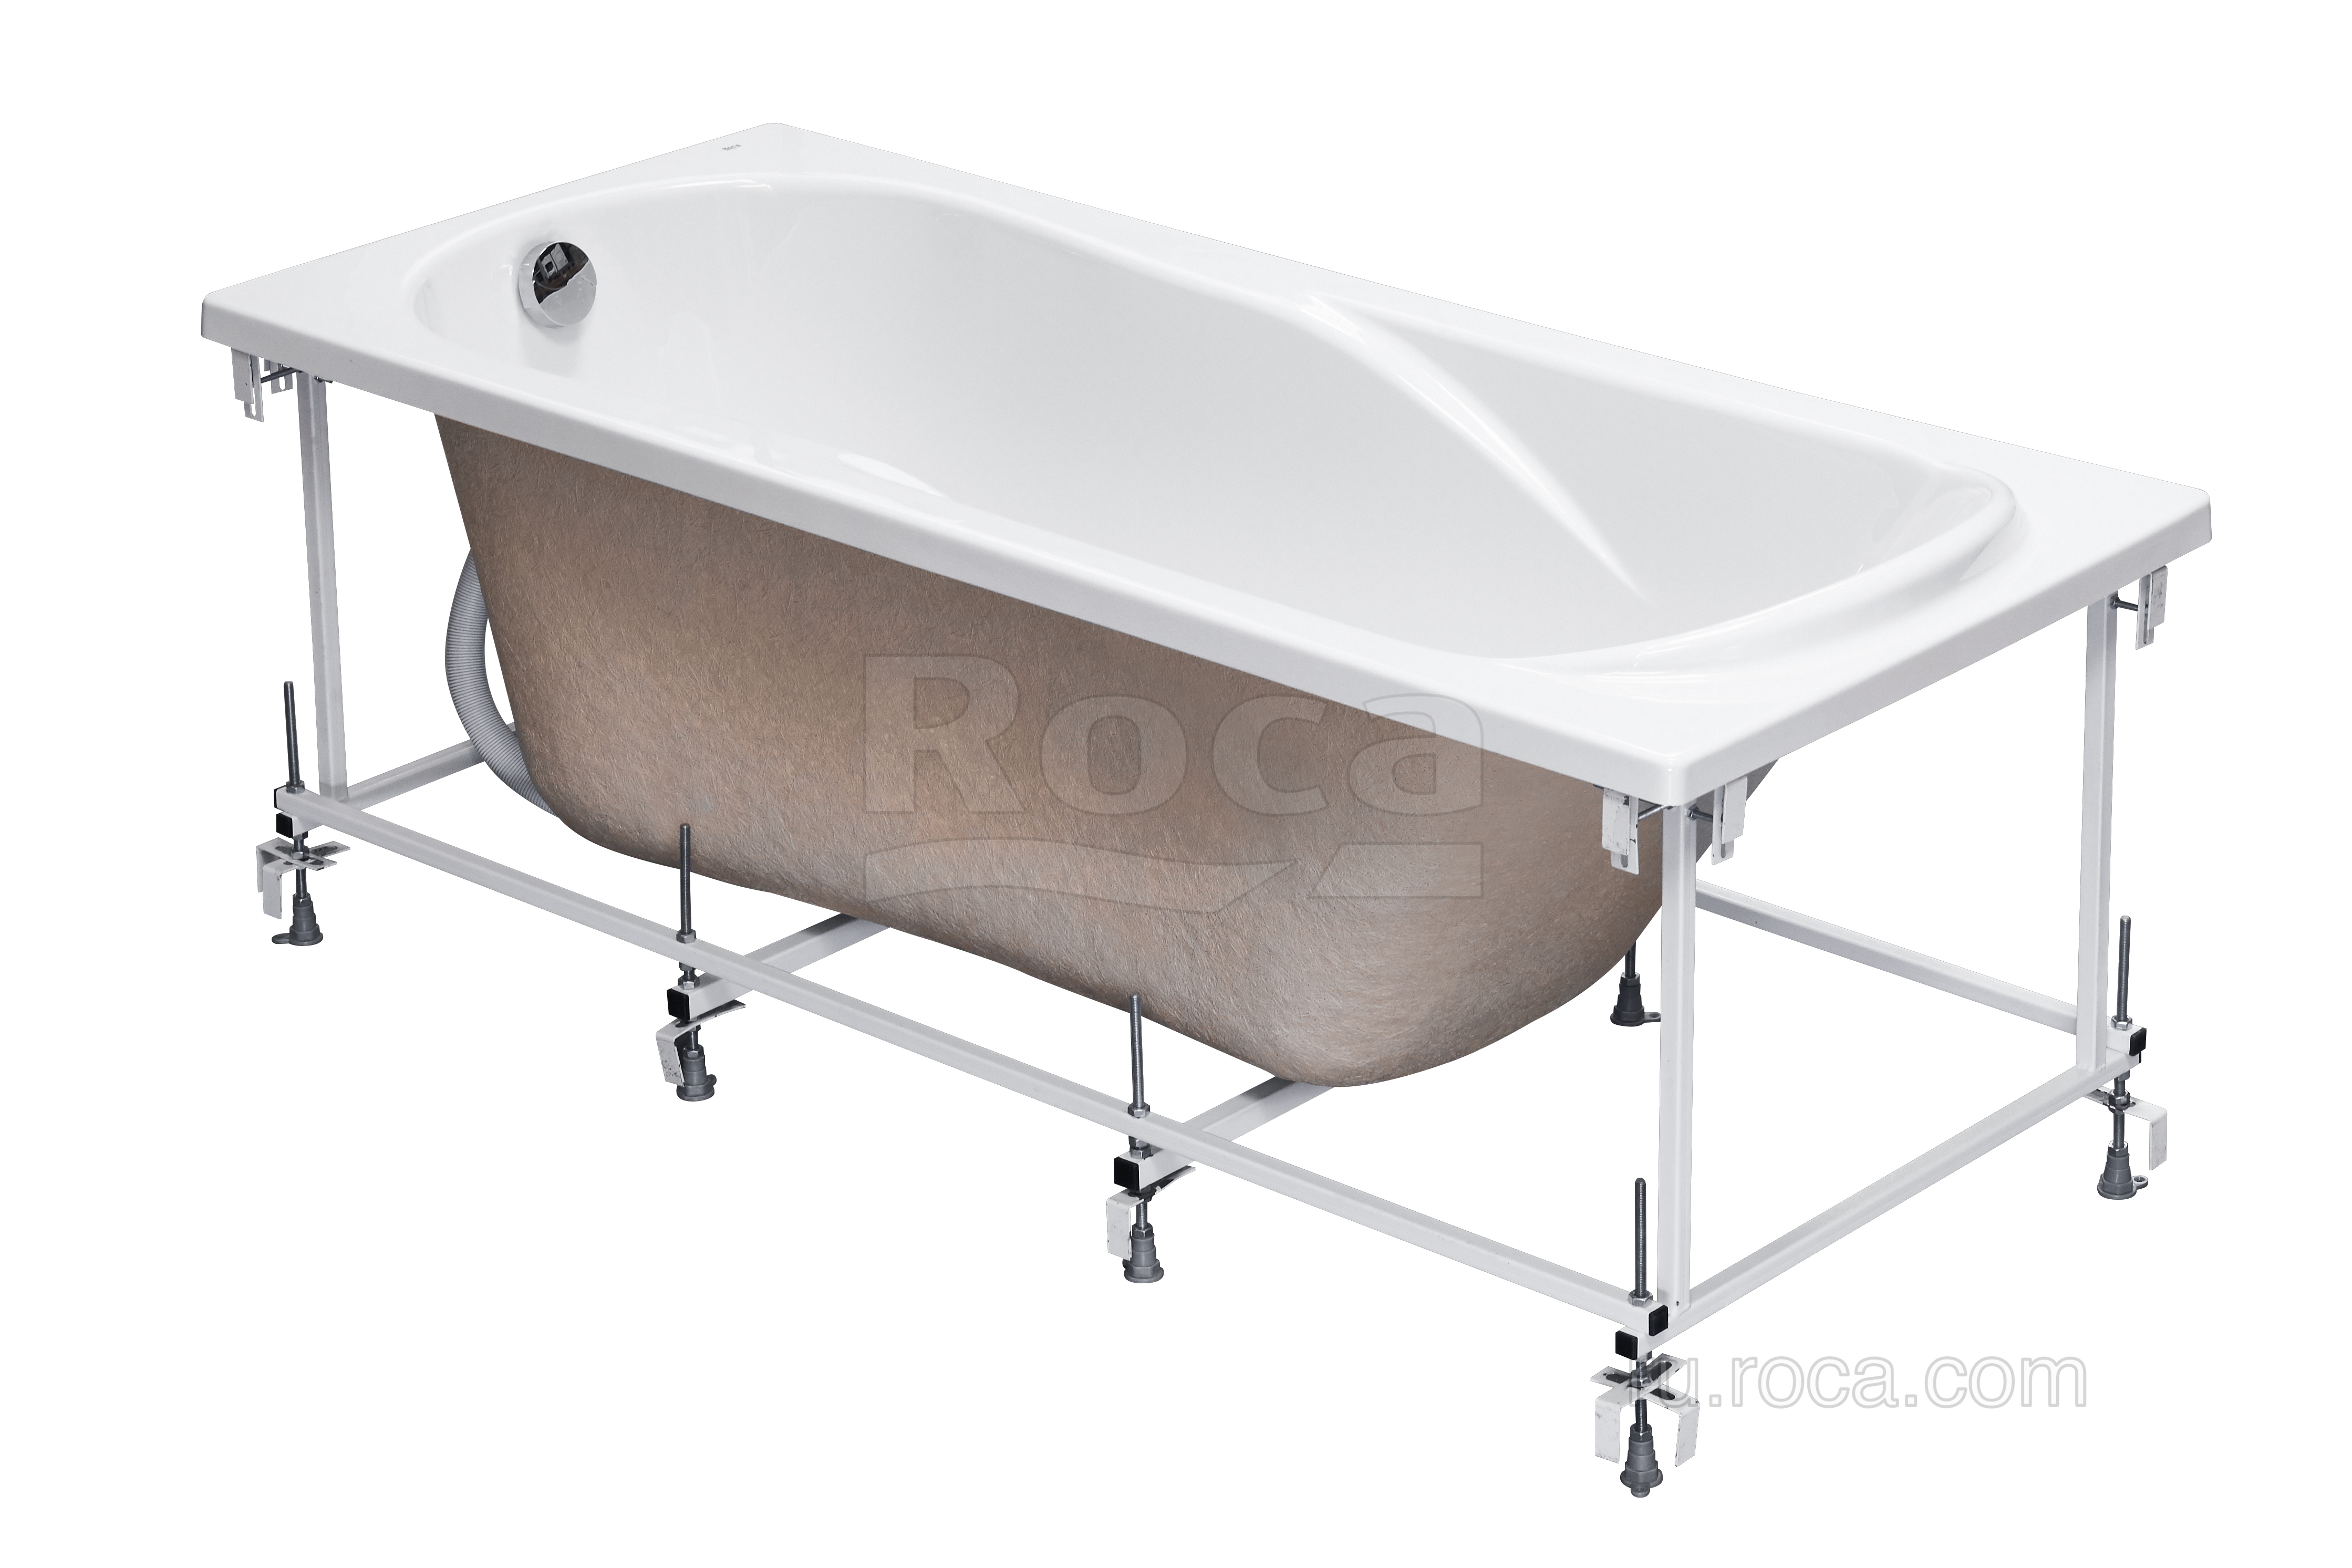 Монтажный комплект к акриловой ванне Uno 160x75 ZRU9302875 Roca